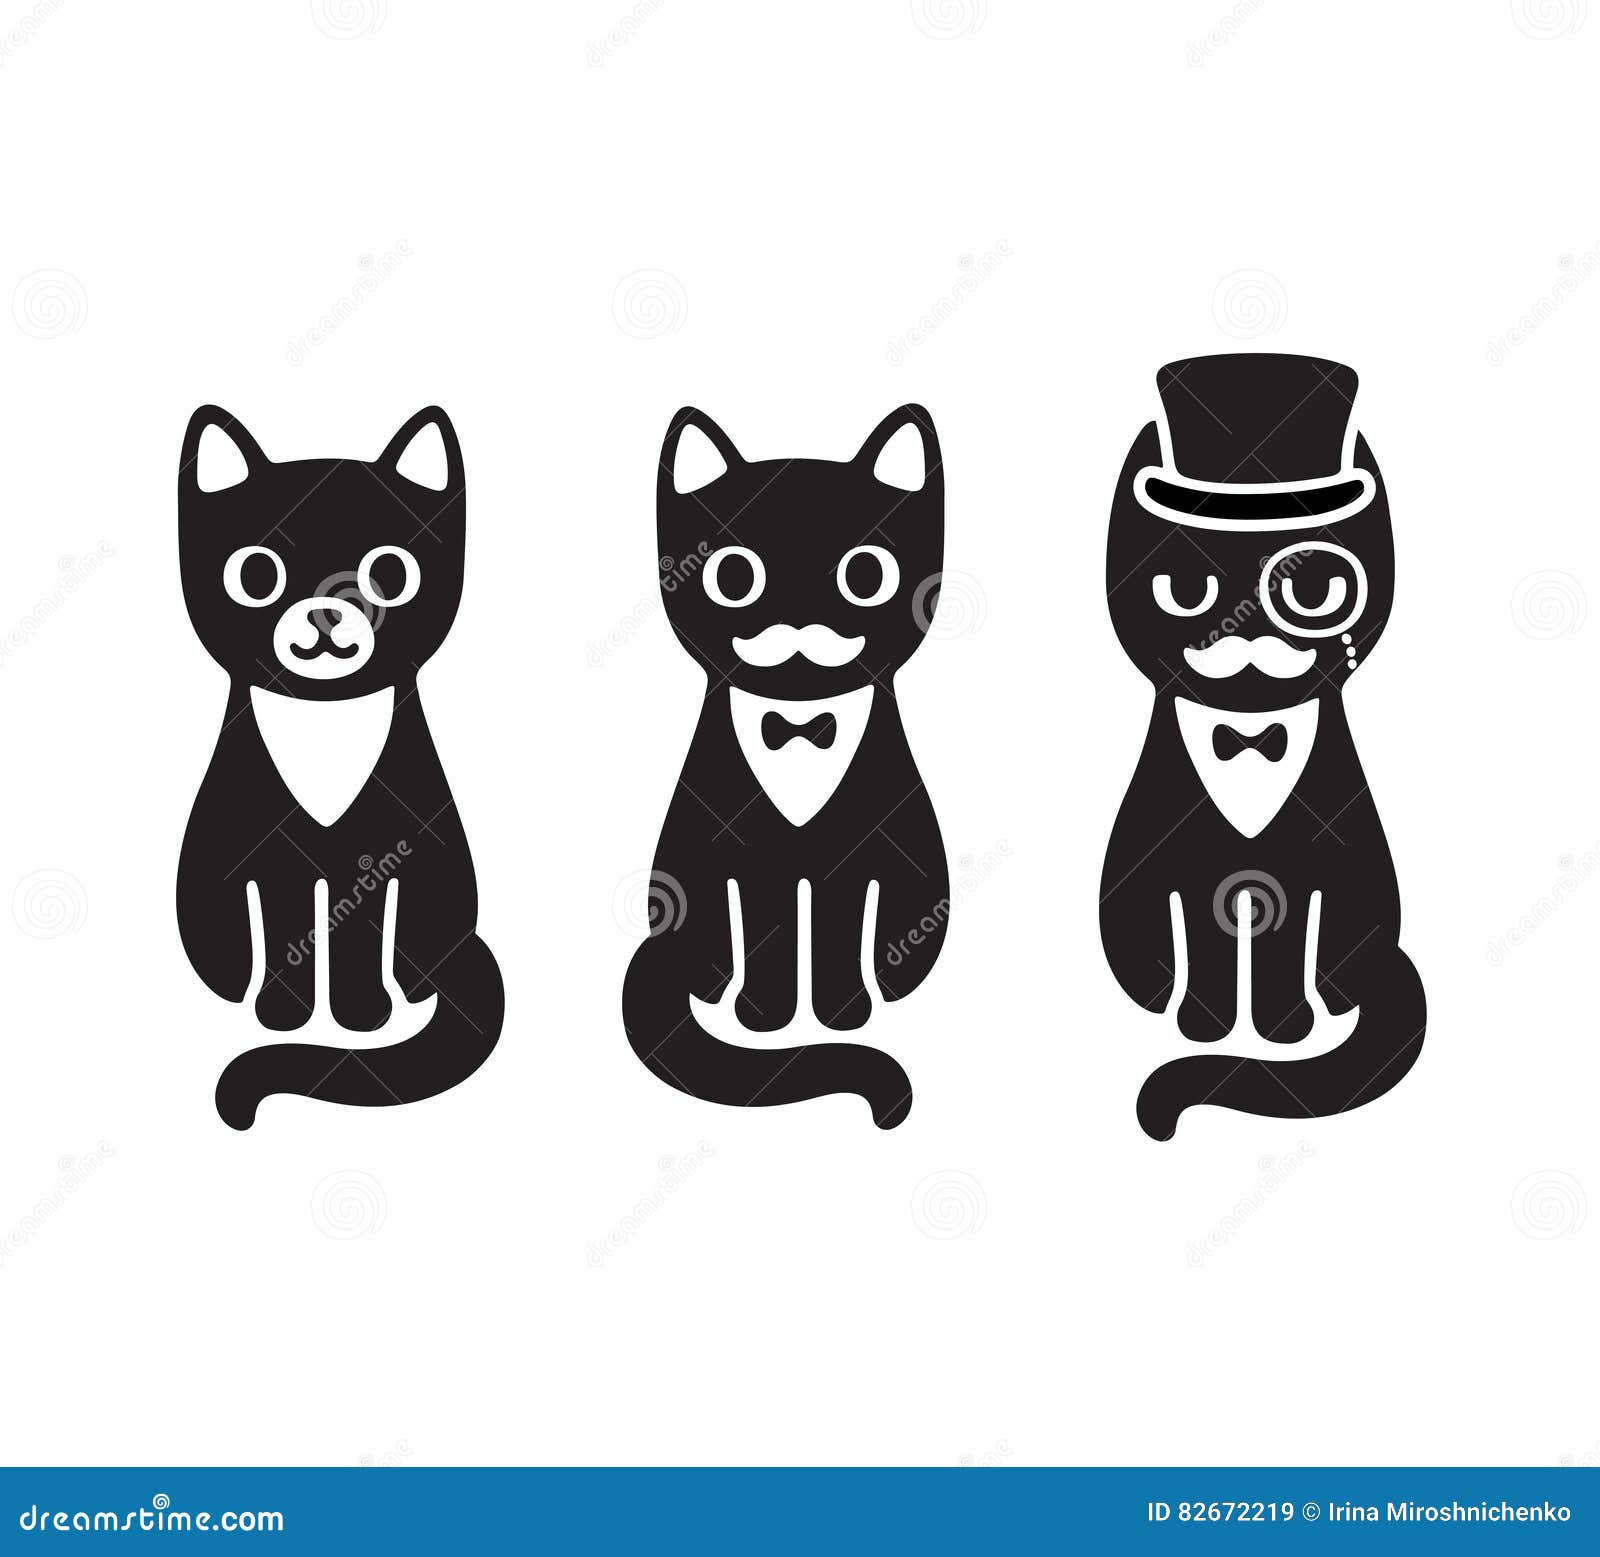 Elegant Cat In Top Hat And Bow Tie Cartoon Vector | CartoonDealer.com